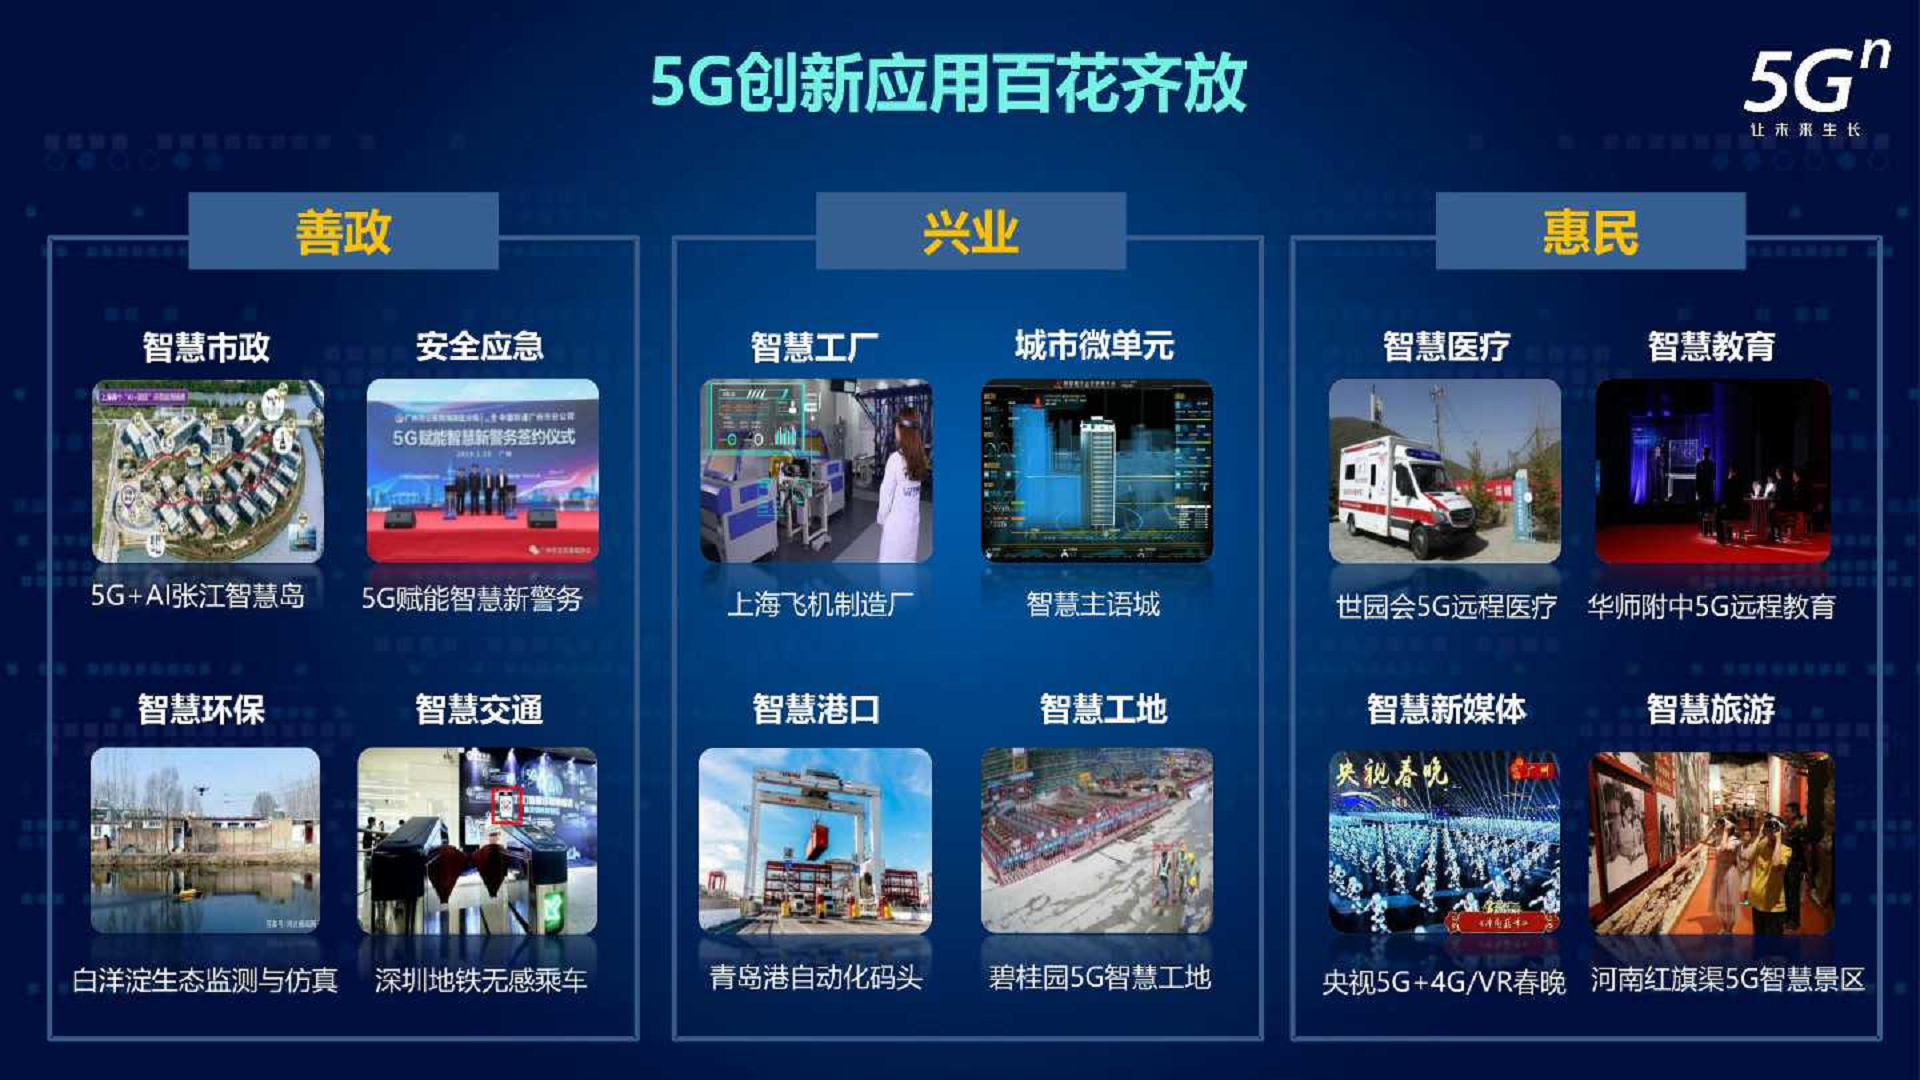 沈阳 5G 网络物流园：科技与物流融合的典范，引领未来物流潮流